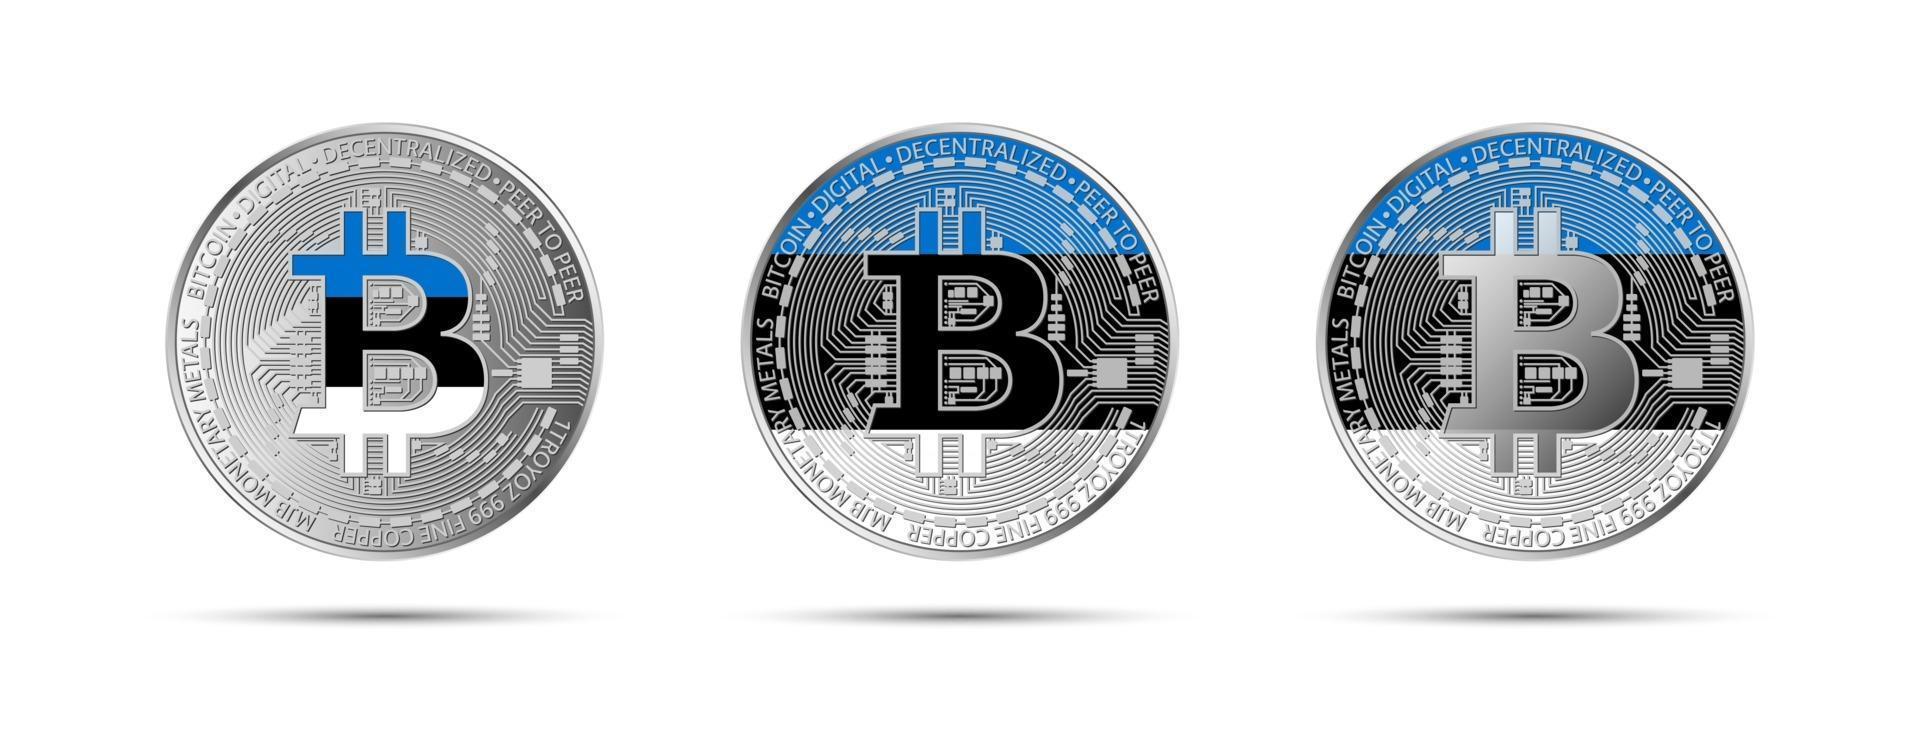 Estonia crypto coin how to cash out bitcoin wallet